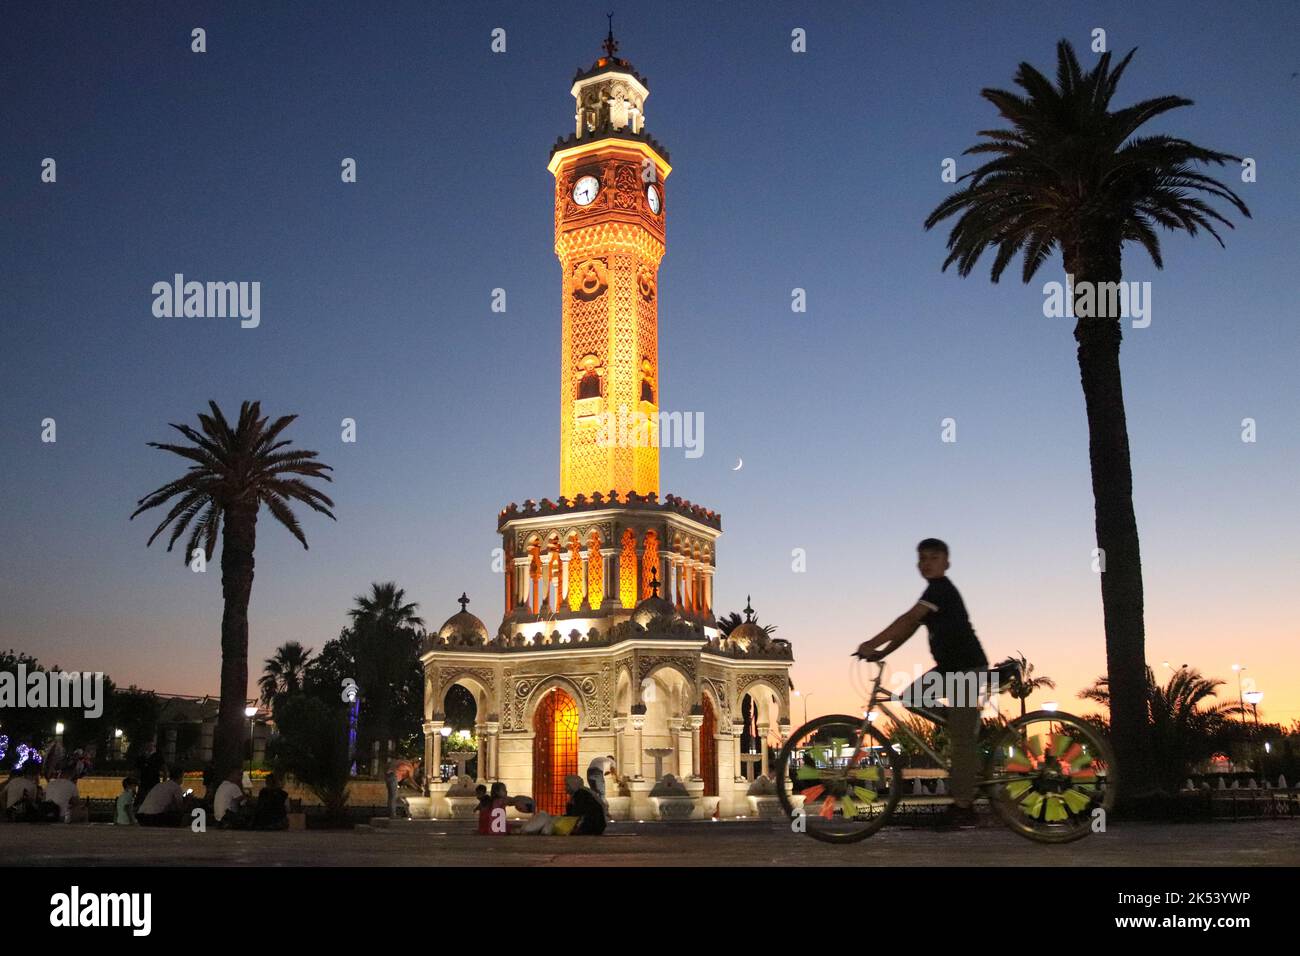 3,474 Izmir Night Images, Stock Photos & Vectors | Shutterstock